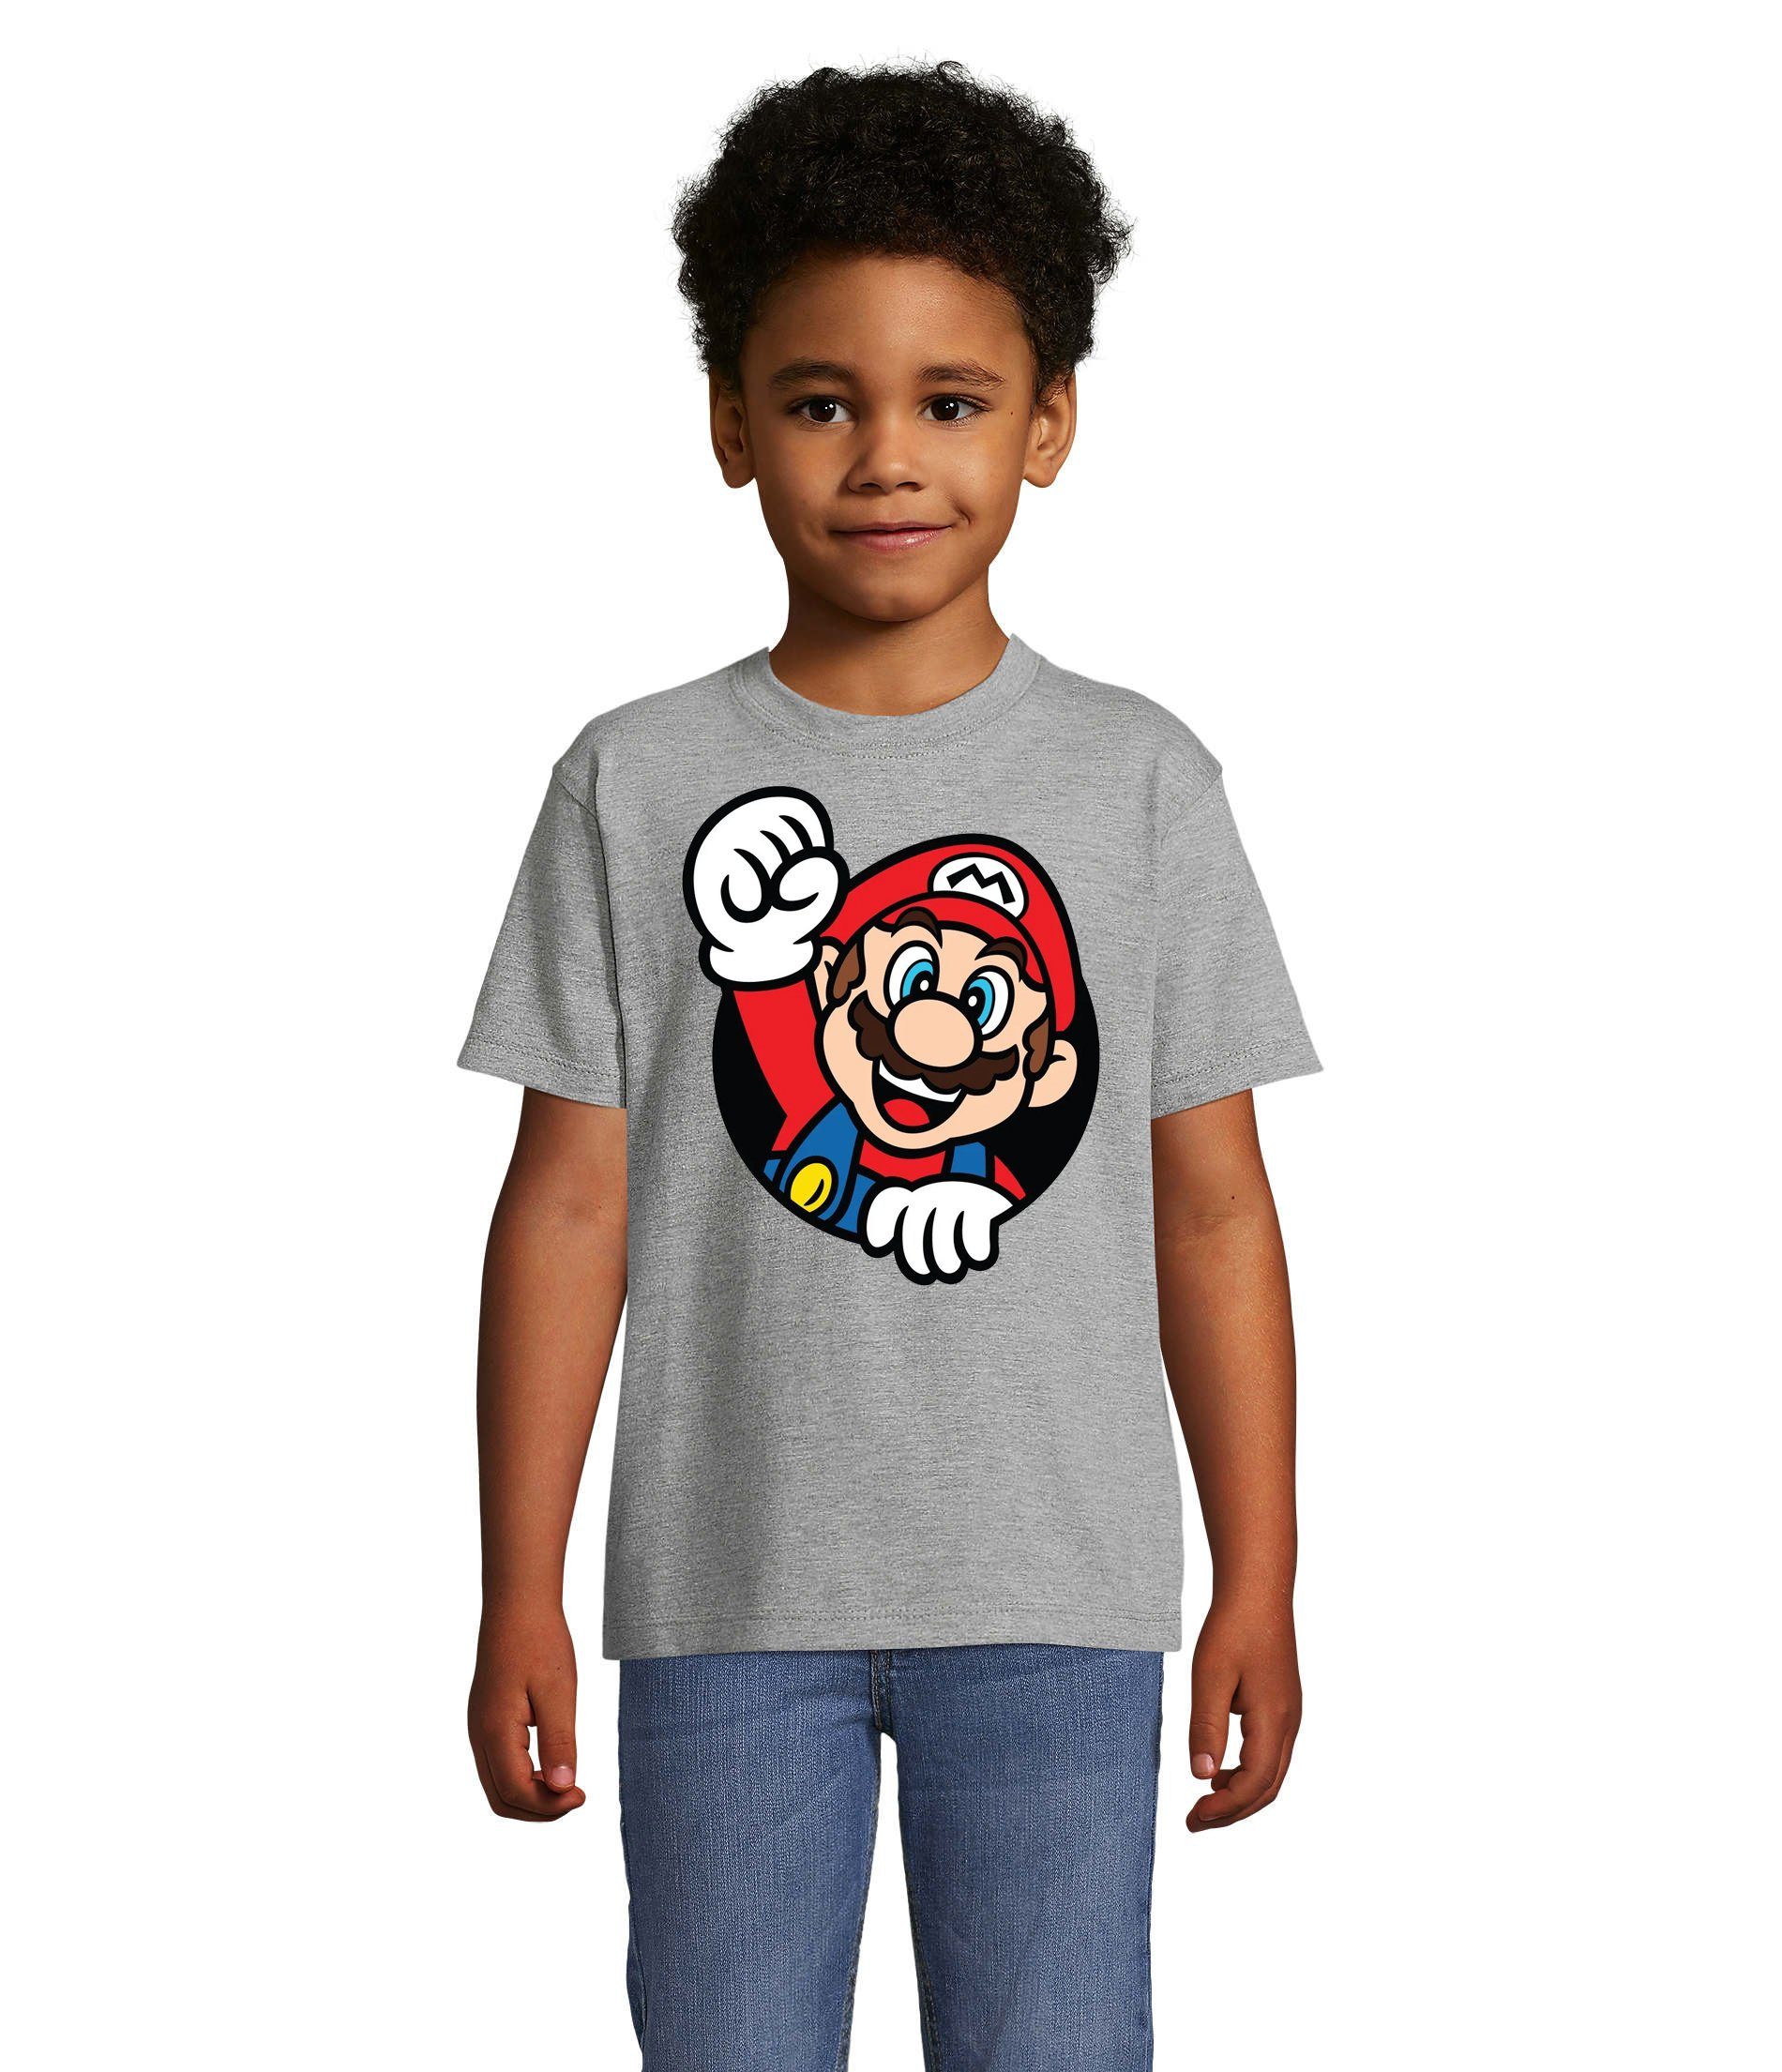 Blondie & Gaming Spiel Kinder Super Nerd T-Shirt Konsole Nintendo Konsole Mario Faust Brownie Grau